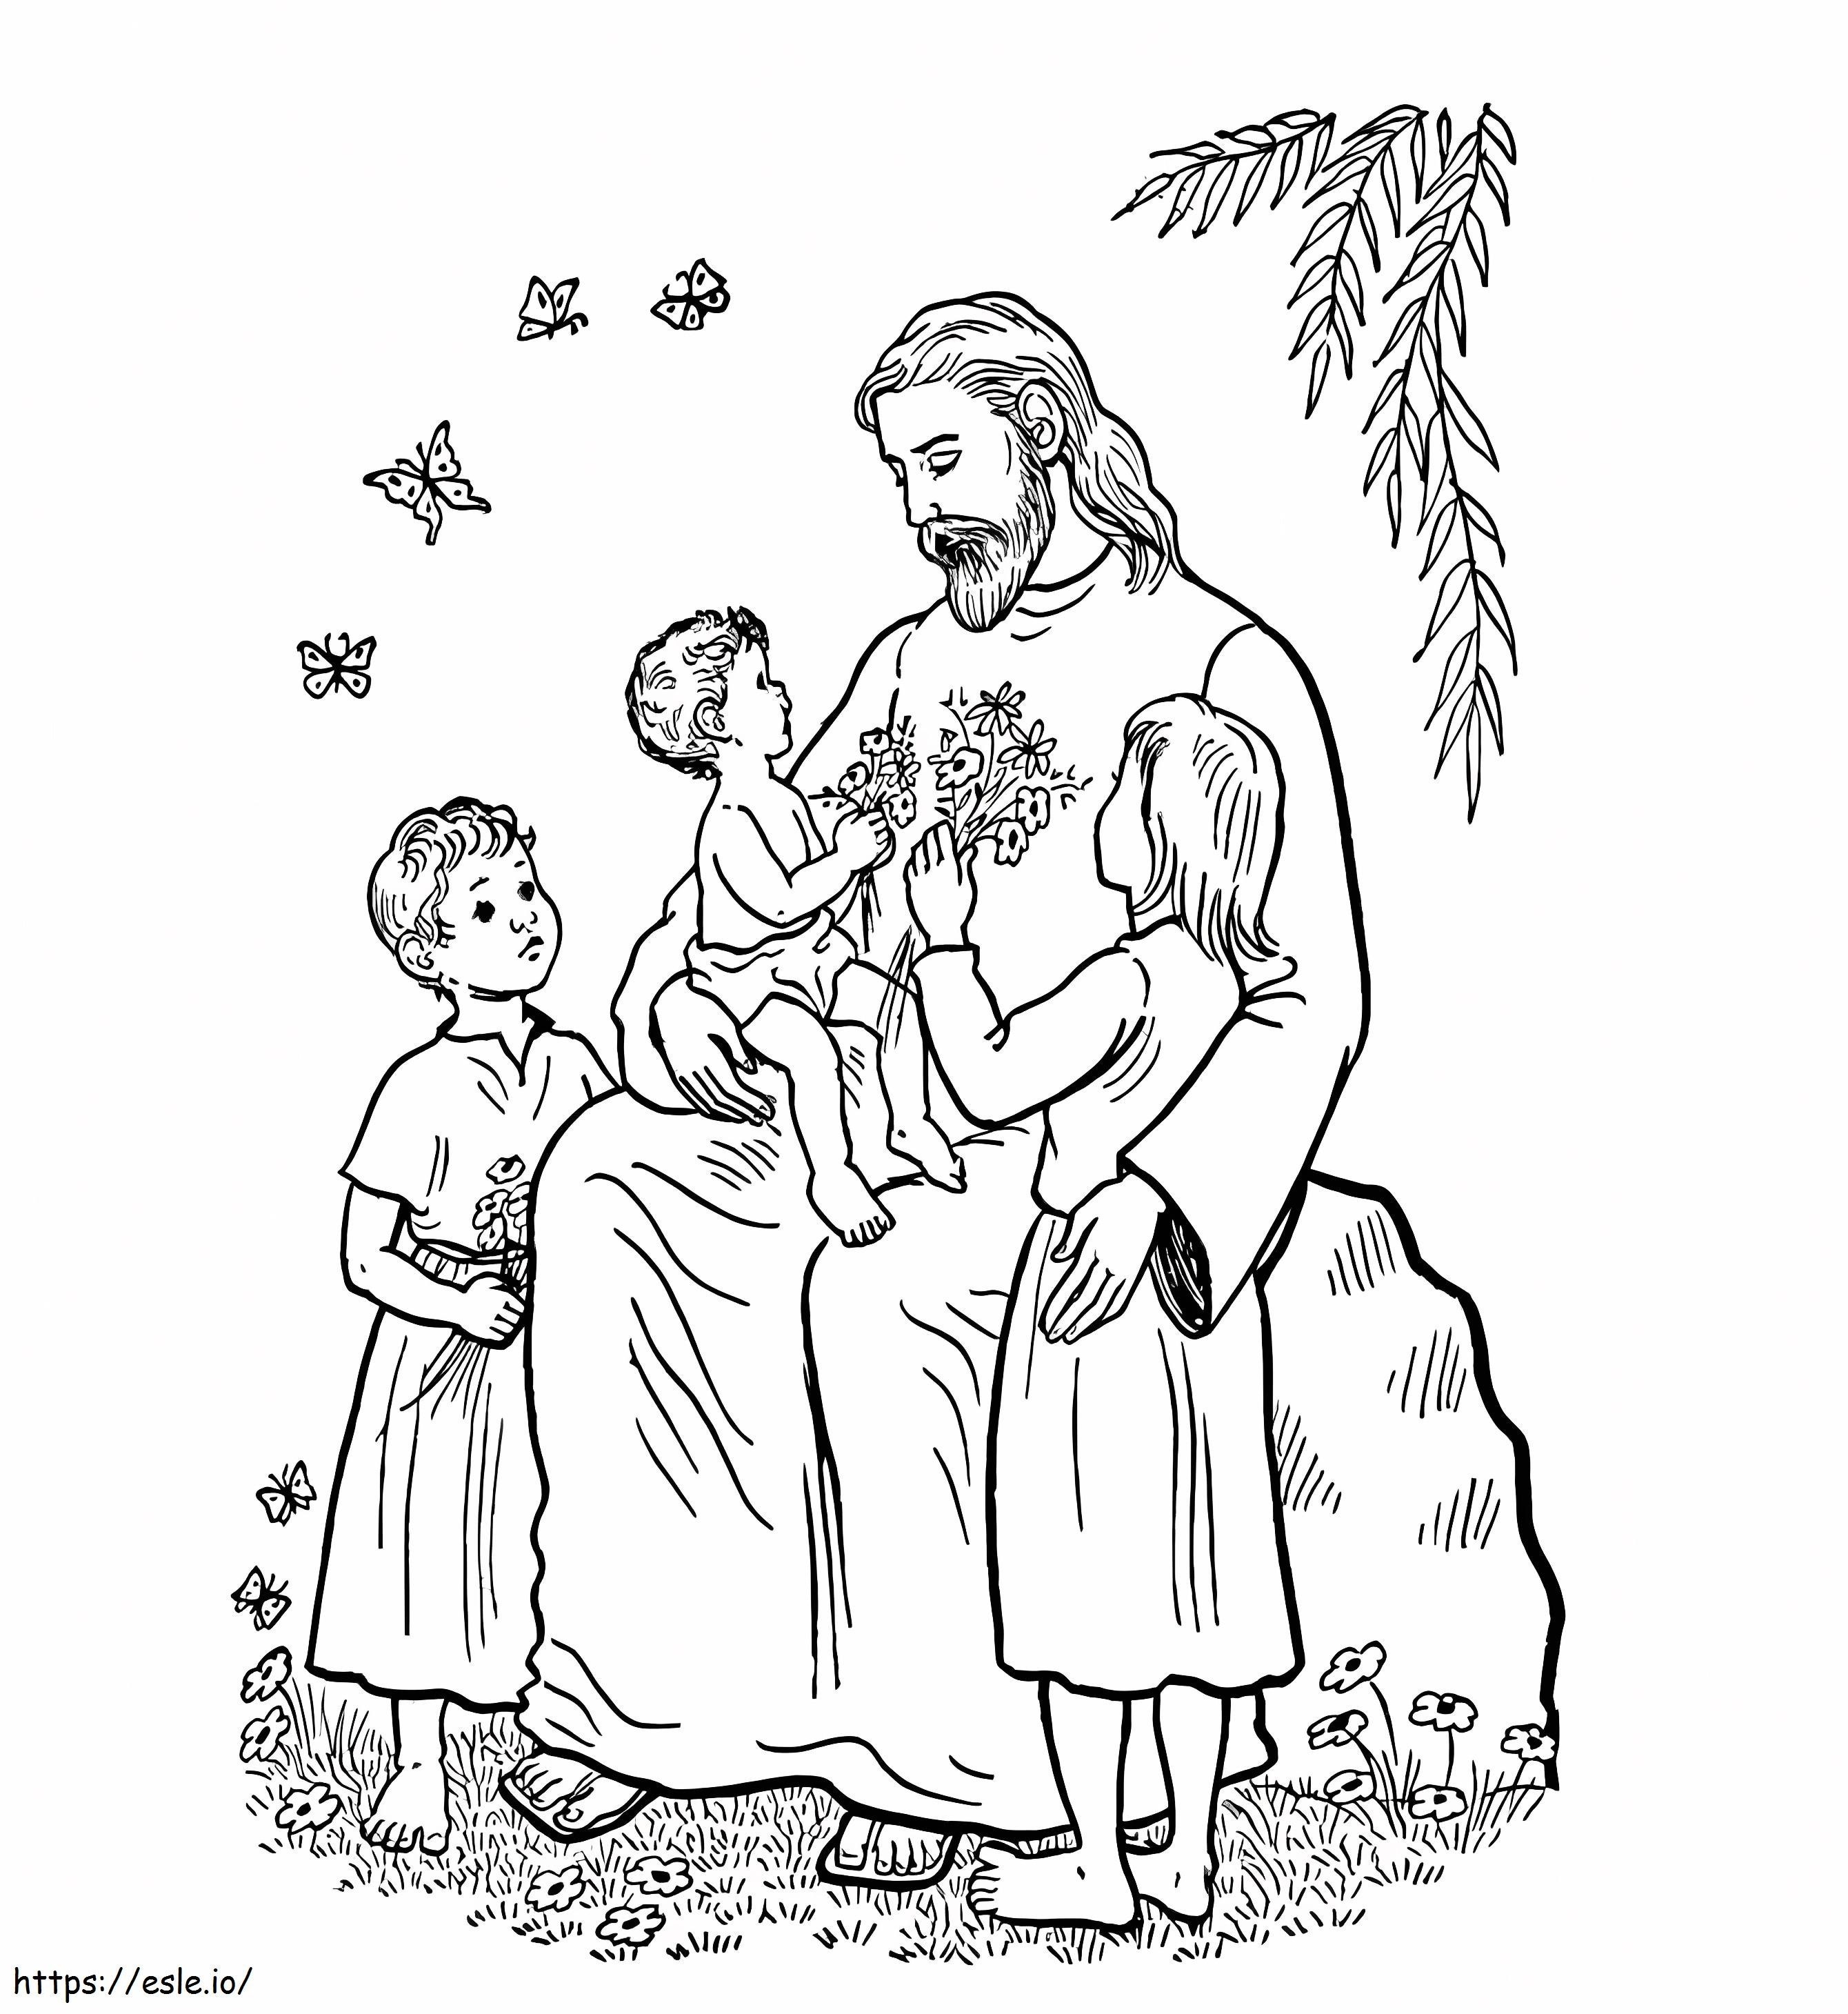 Gesù di base con i bambini da colorare